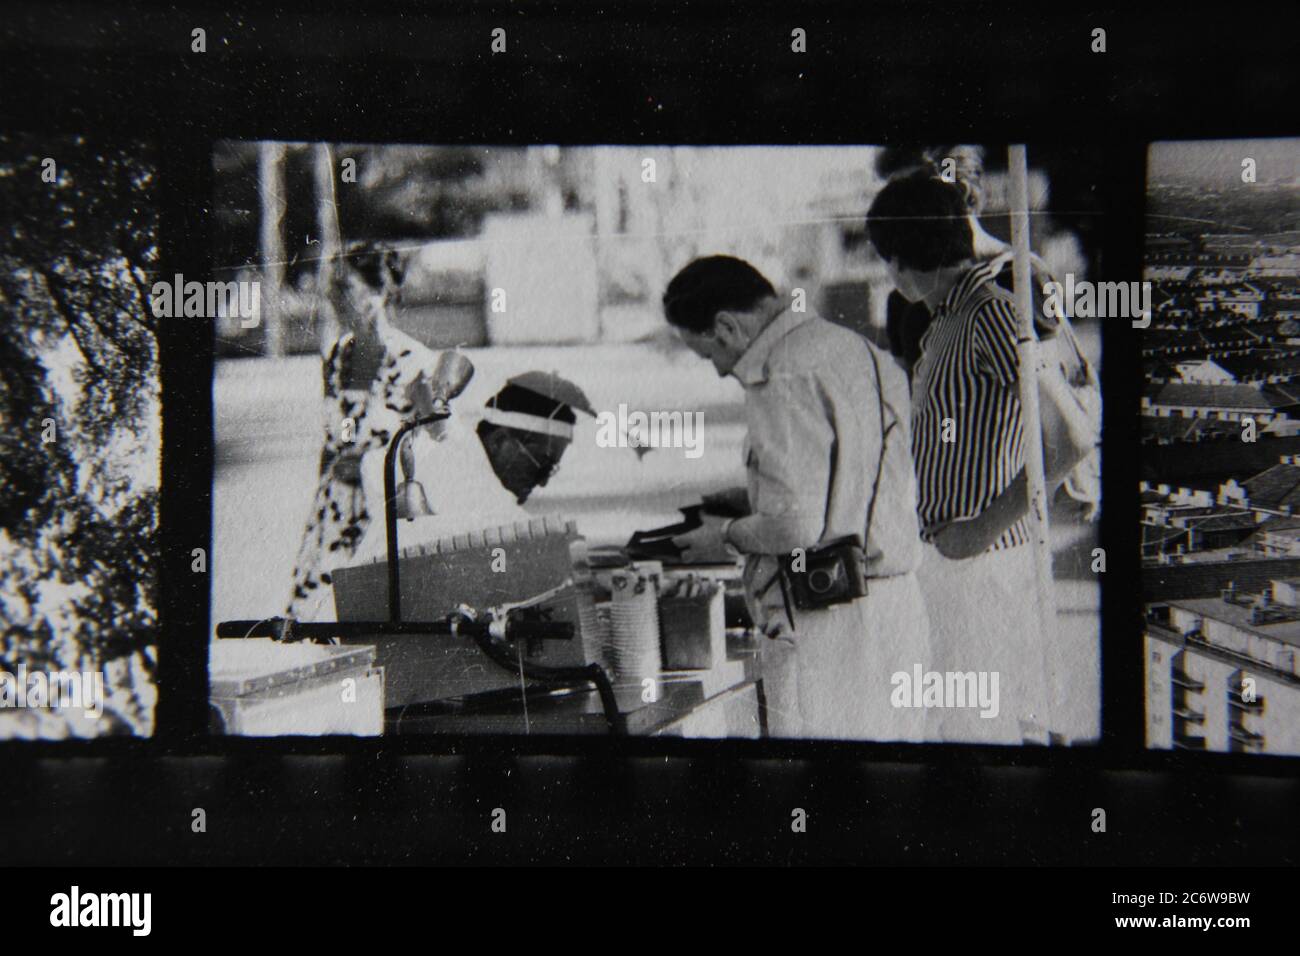 Fin 70s vintage contact imprimer noir et blanc photographie d'un homme fournissant un service à partir d'un kiosque de rue. Banque D'Images